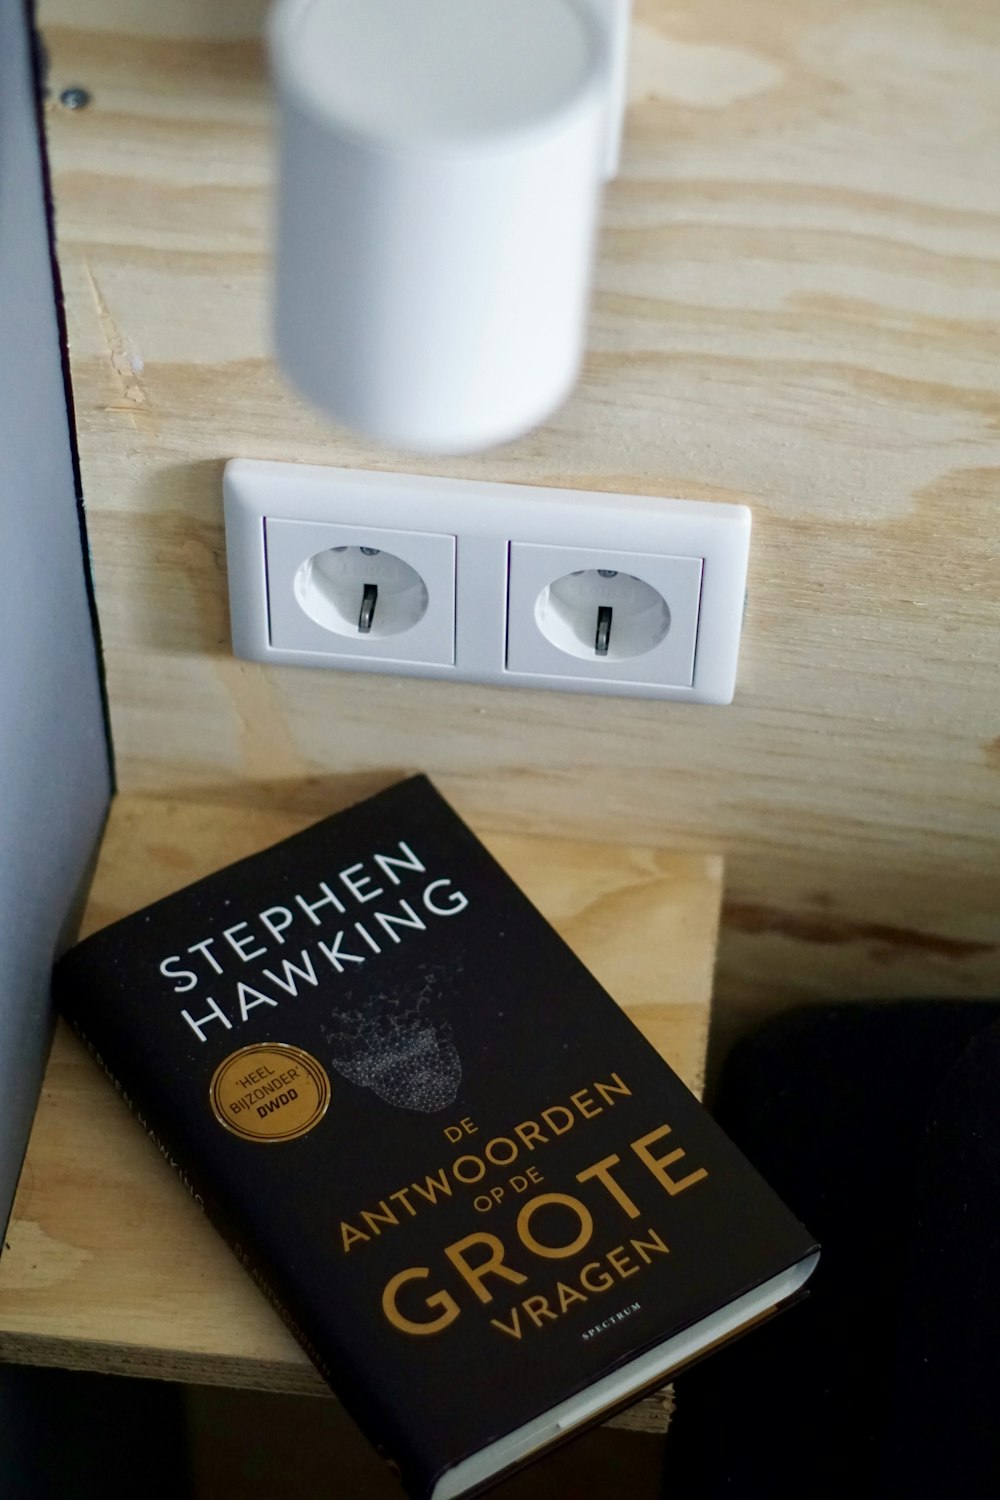 De Antwoorden Op De Grote Vragen por Stephen Hawking livro